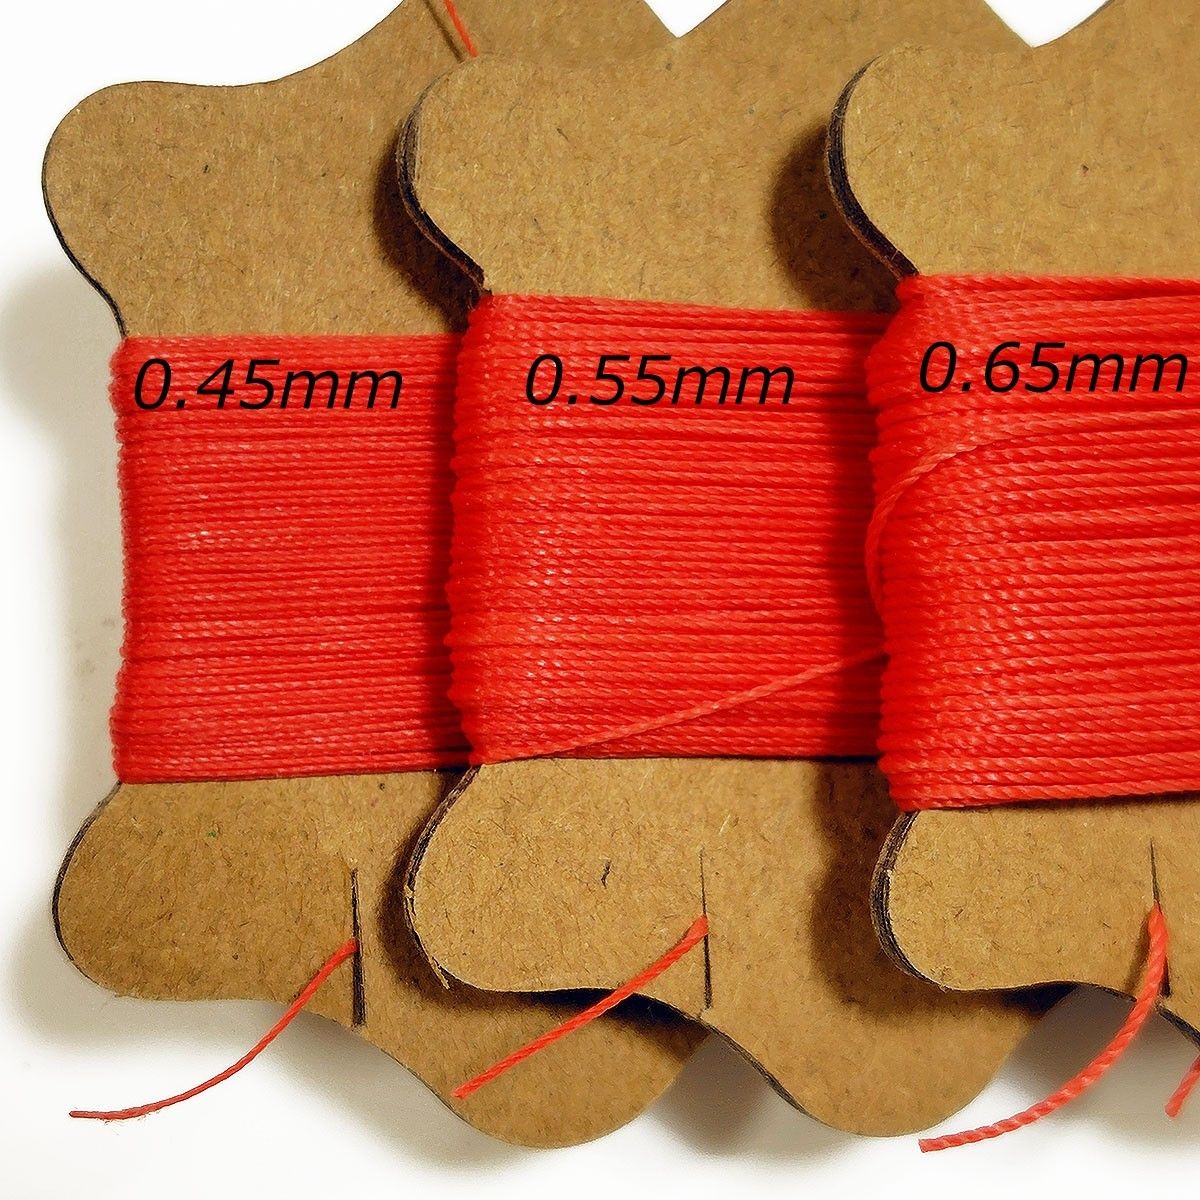 レザークラフト 糸 0.45mm オリーブ 1個 丸紐 ロウビキ糸 ワックスコード 蝋引き糸 ロウ引き糸 ポリエステル